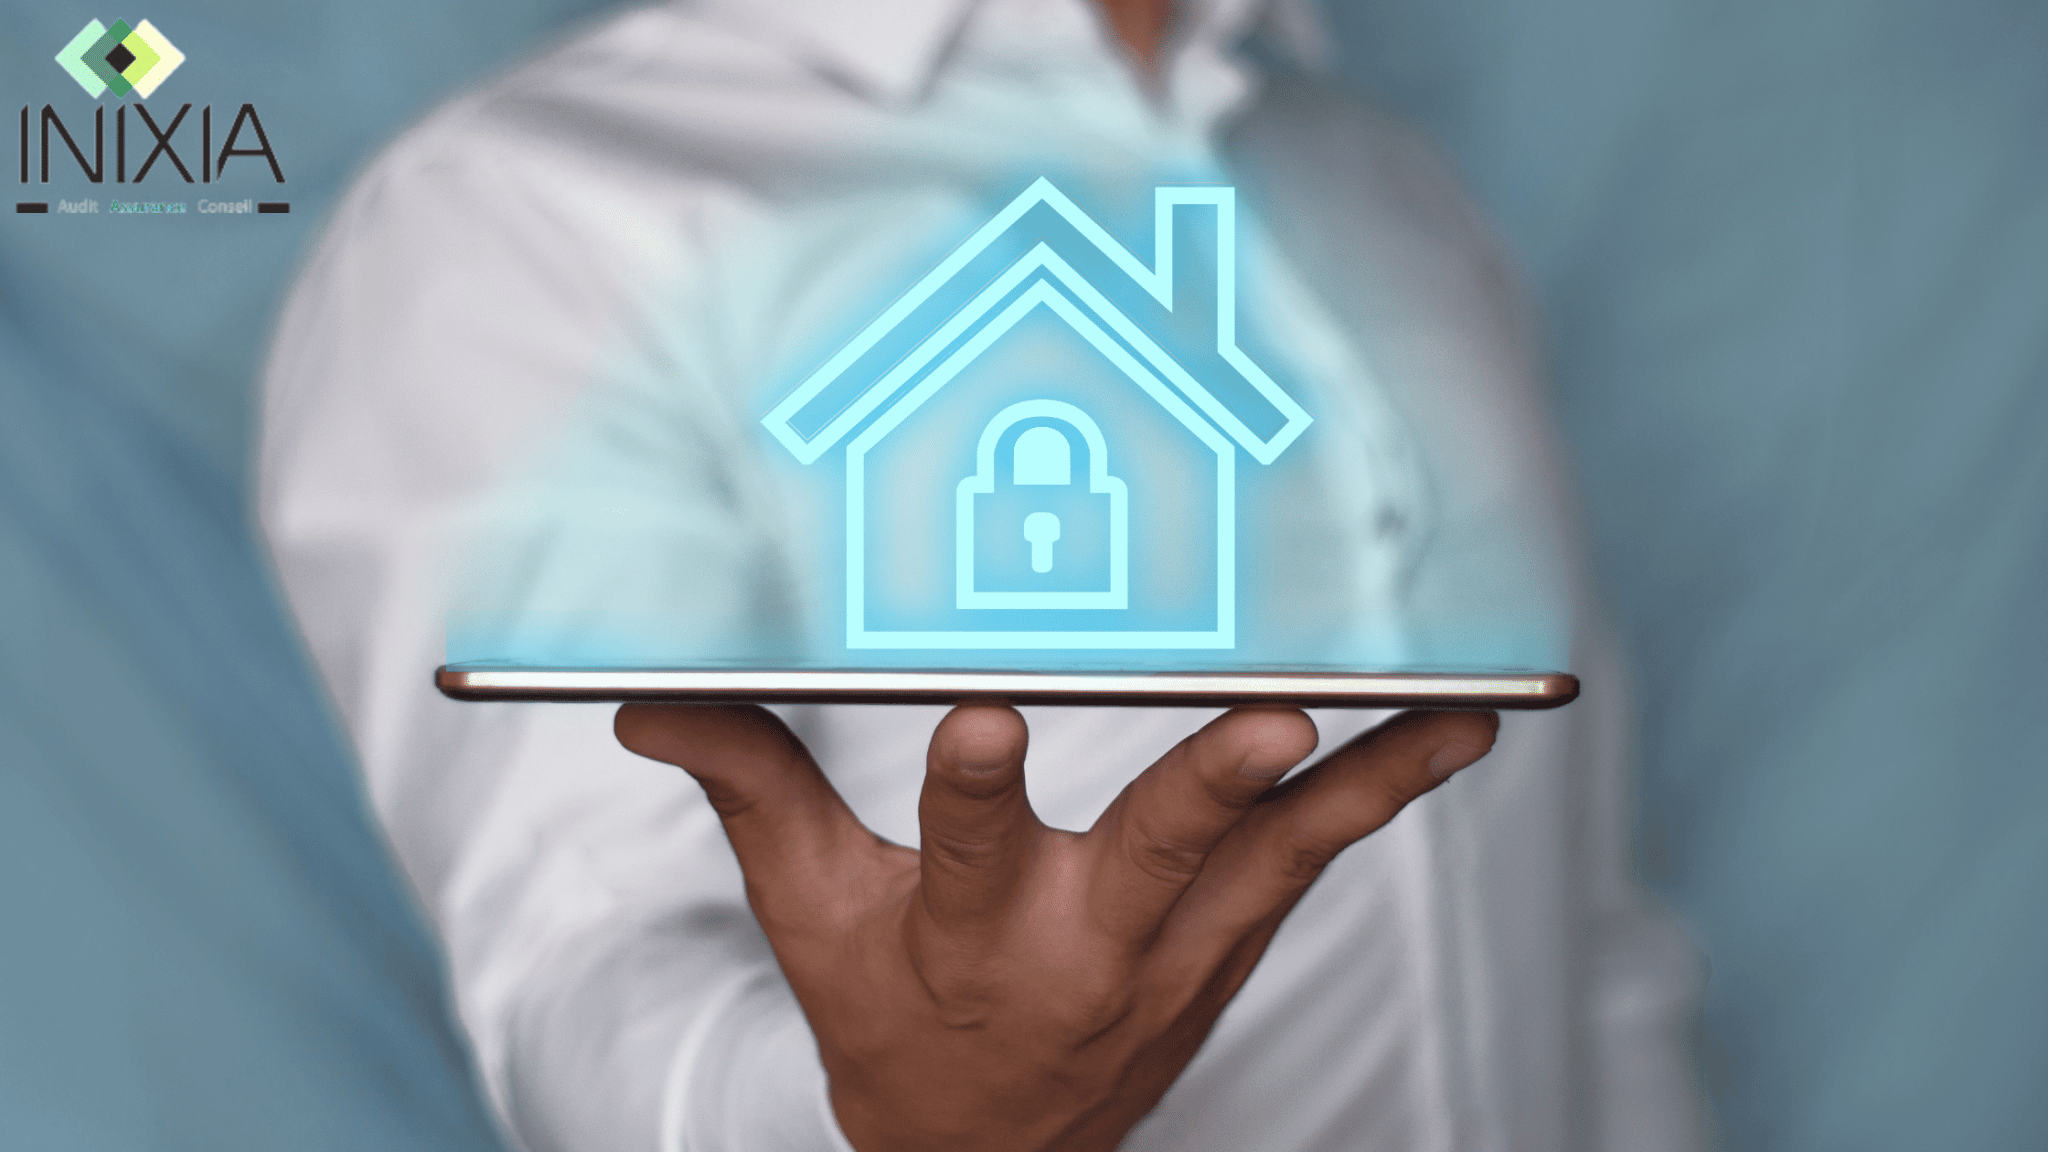 Une personne tient une tablette dans sa main et au-dessus de la tablette, on voit une maison virtuelle en bleu.